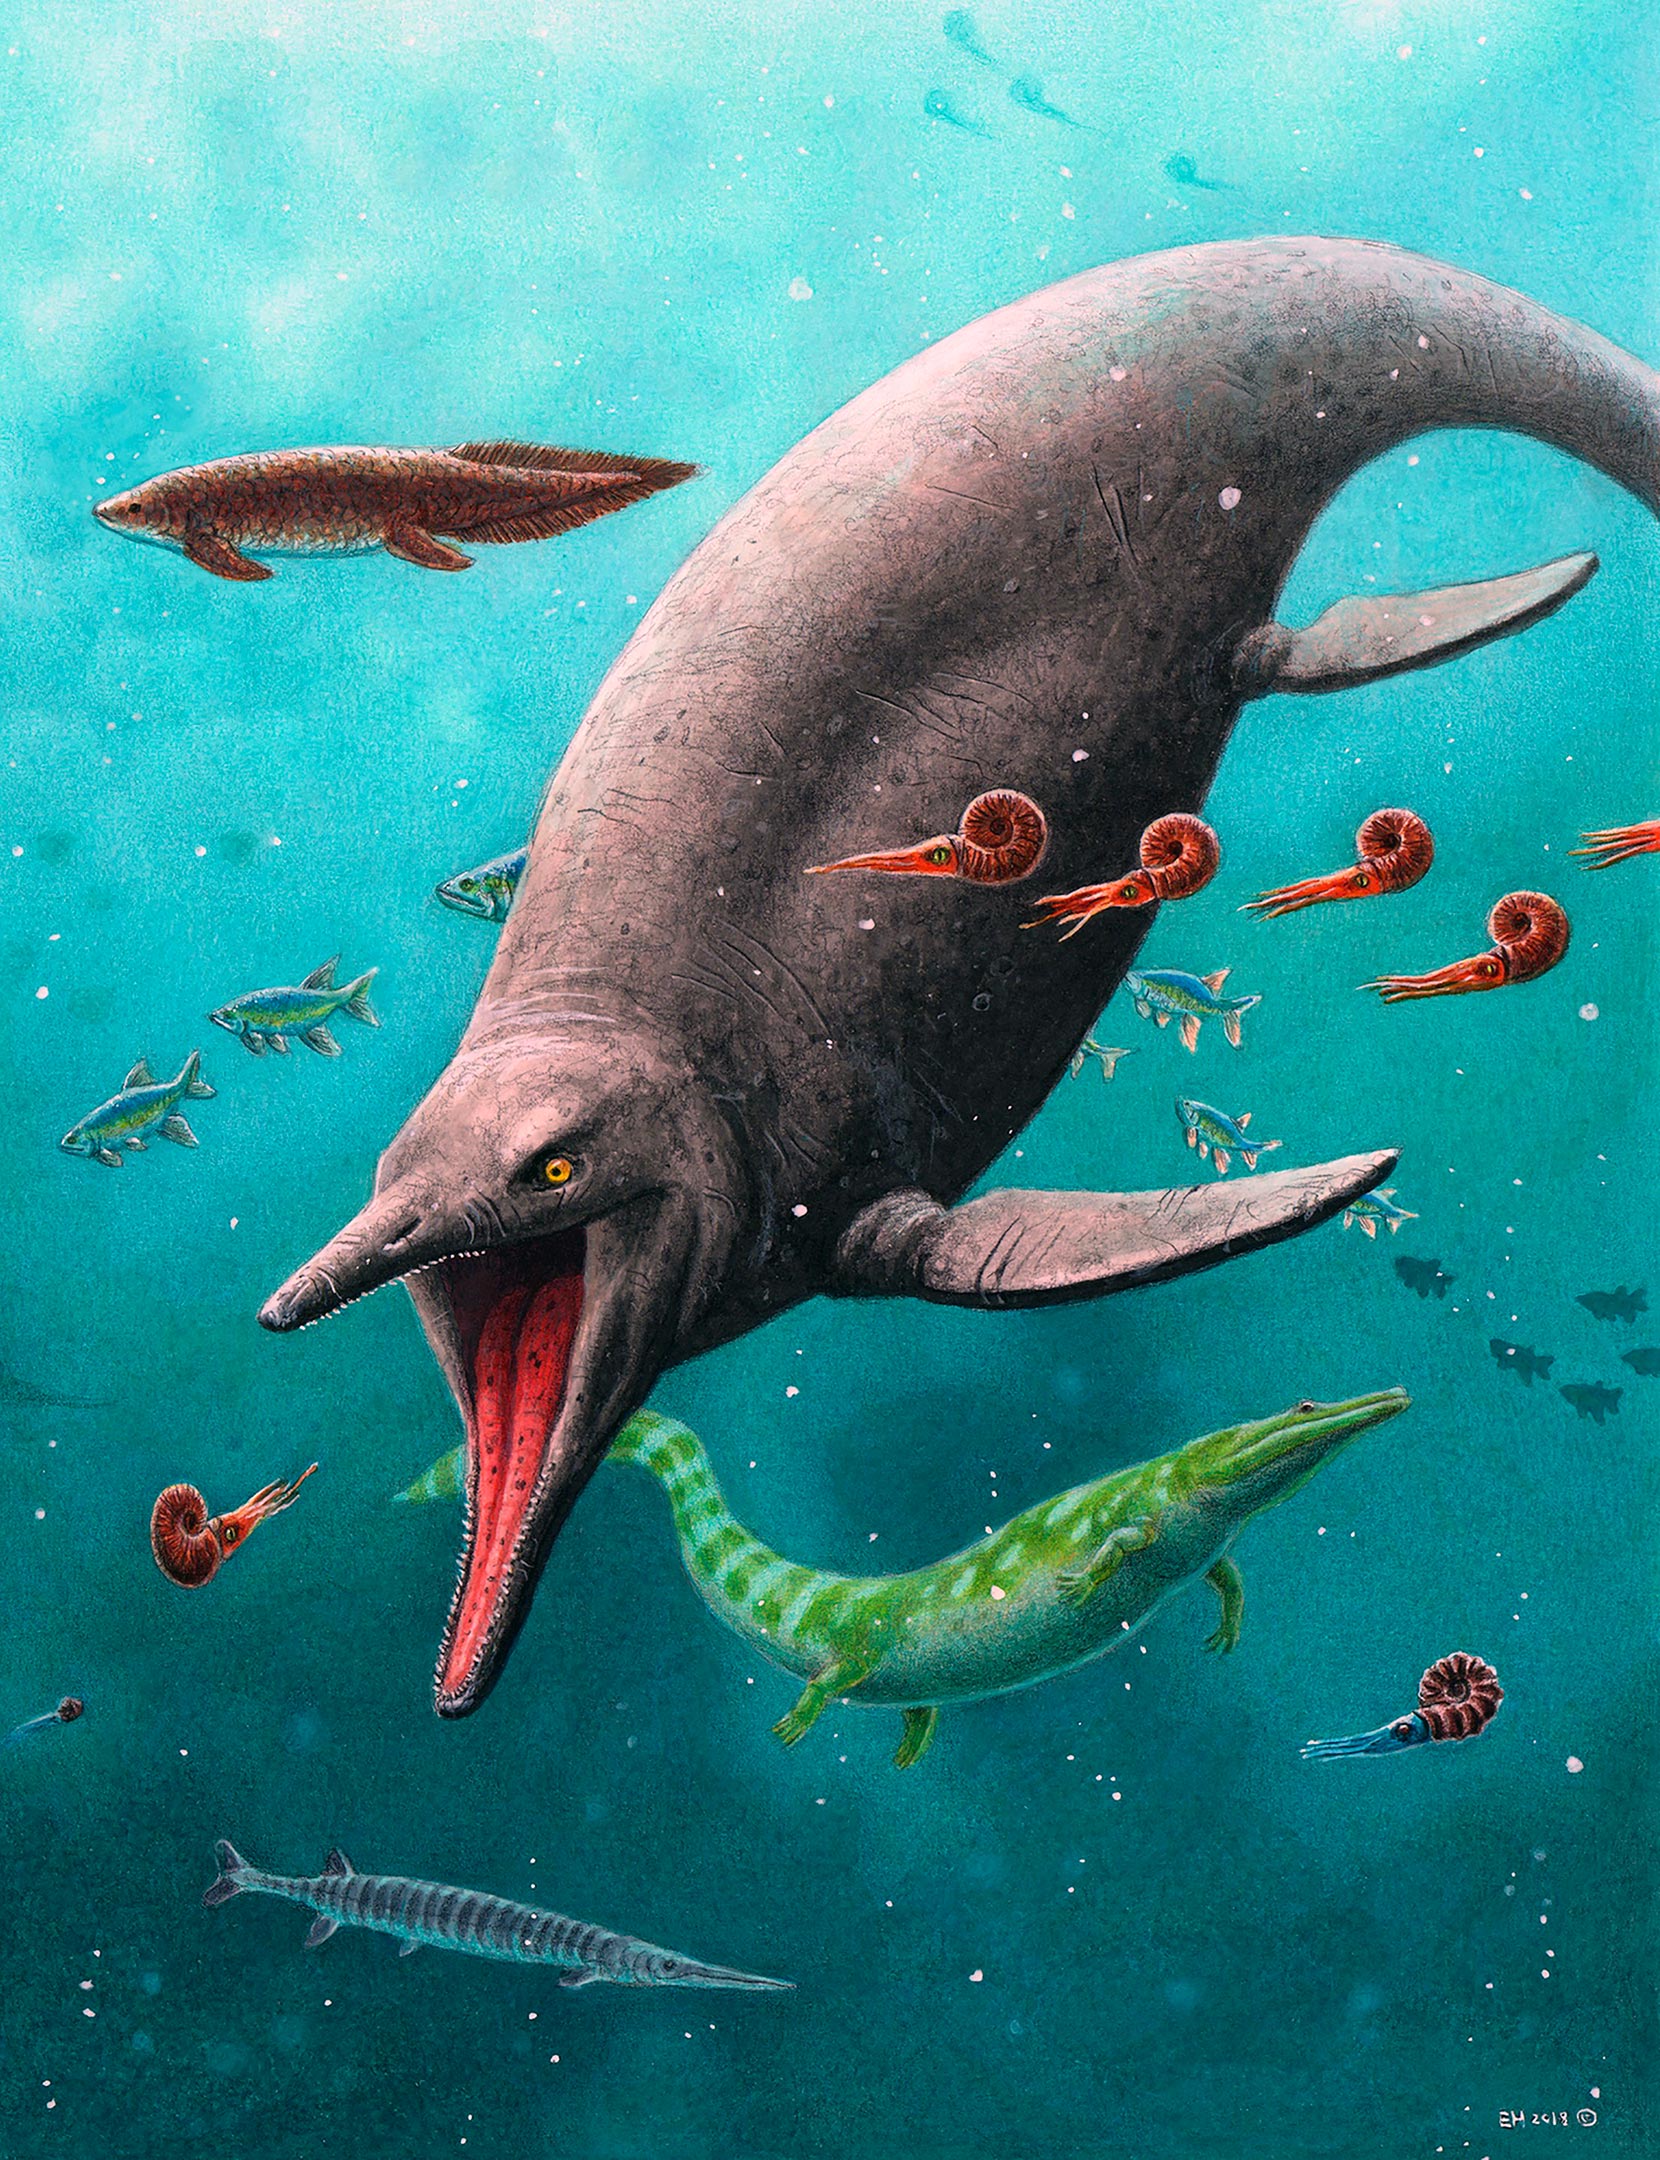 Monstruo marino de la era de los dinosaurios encontrado en una remota isla ártica